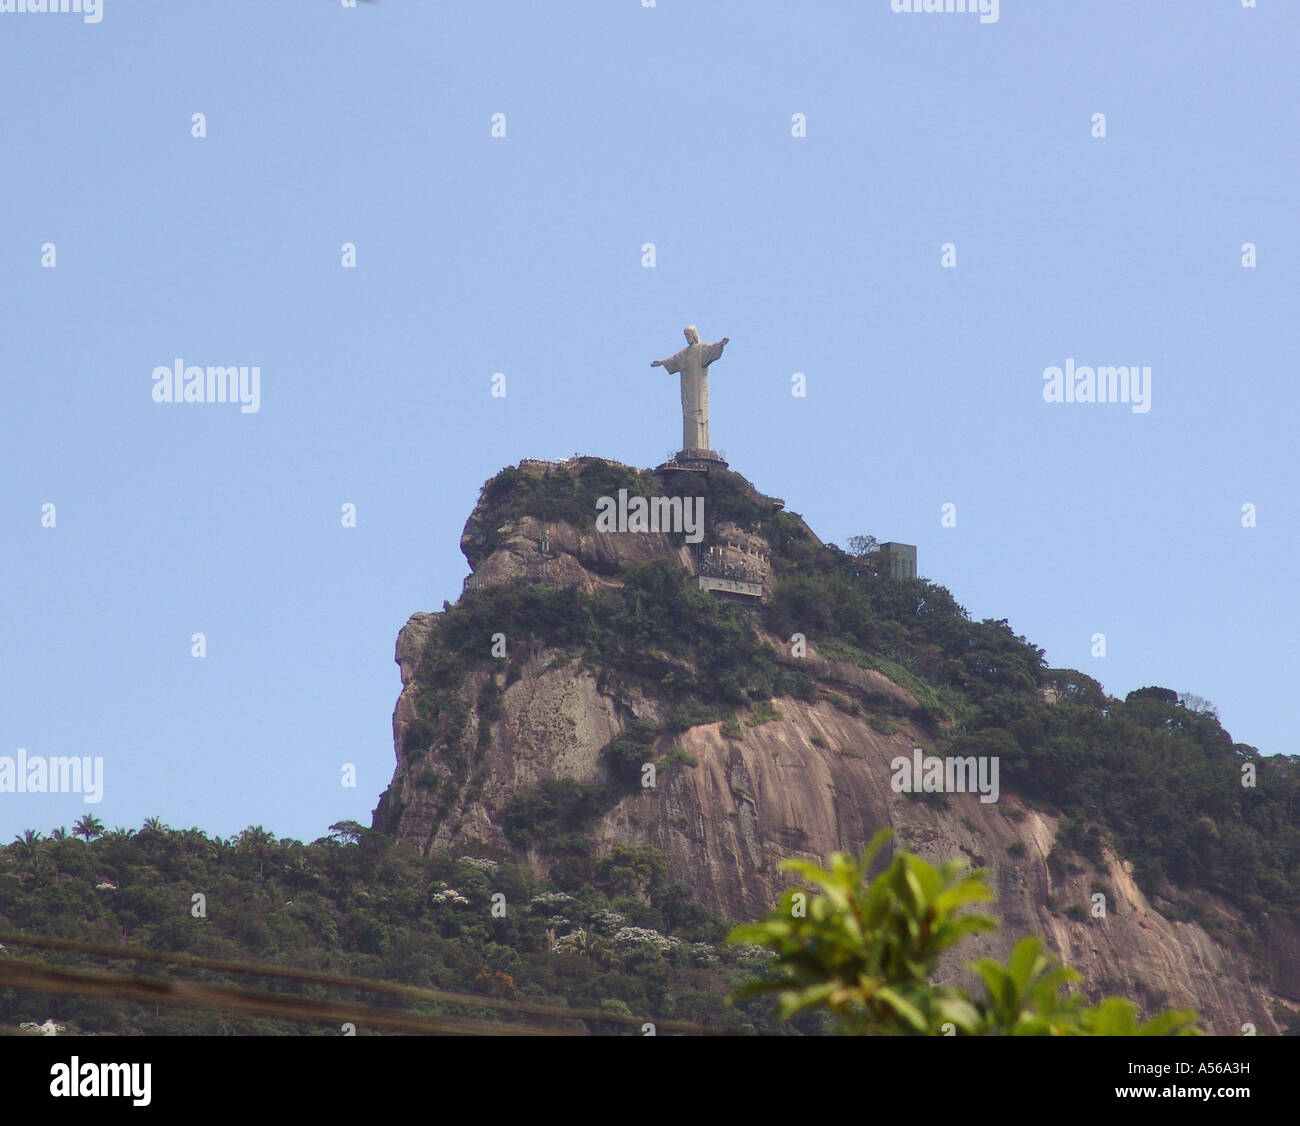 Painet iy8152 Brasil la estatua del Cristo Redentor de Río de Janeiro 2005 país nación en desarrollo menos desarrollados económicamente la cultura Foto de stock